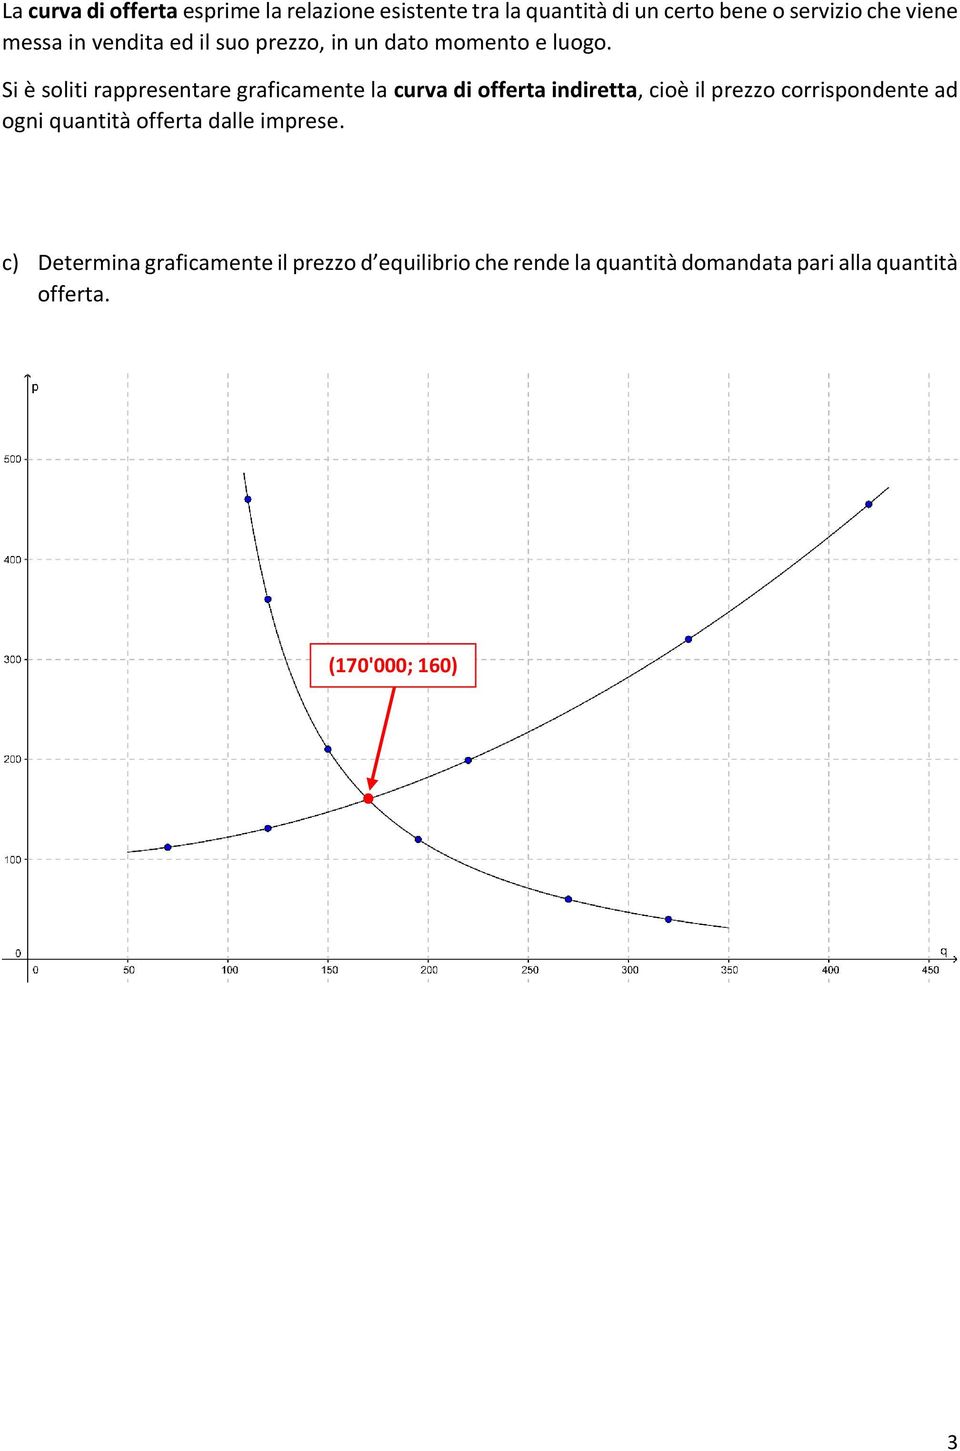 Si è soliti rappresentare graficamente la curva di offerta indiretta, cioè il prezzo corrispondente ad ogni